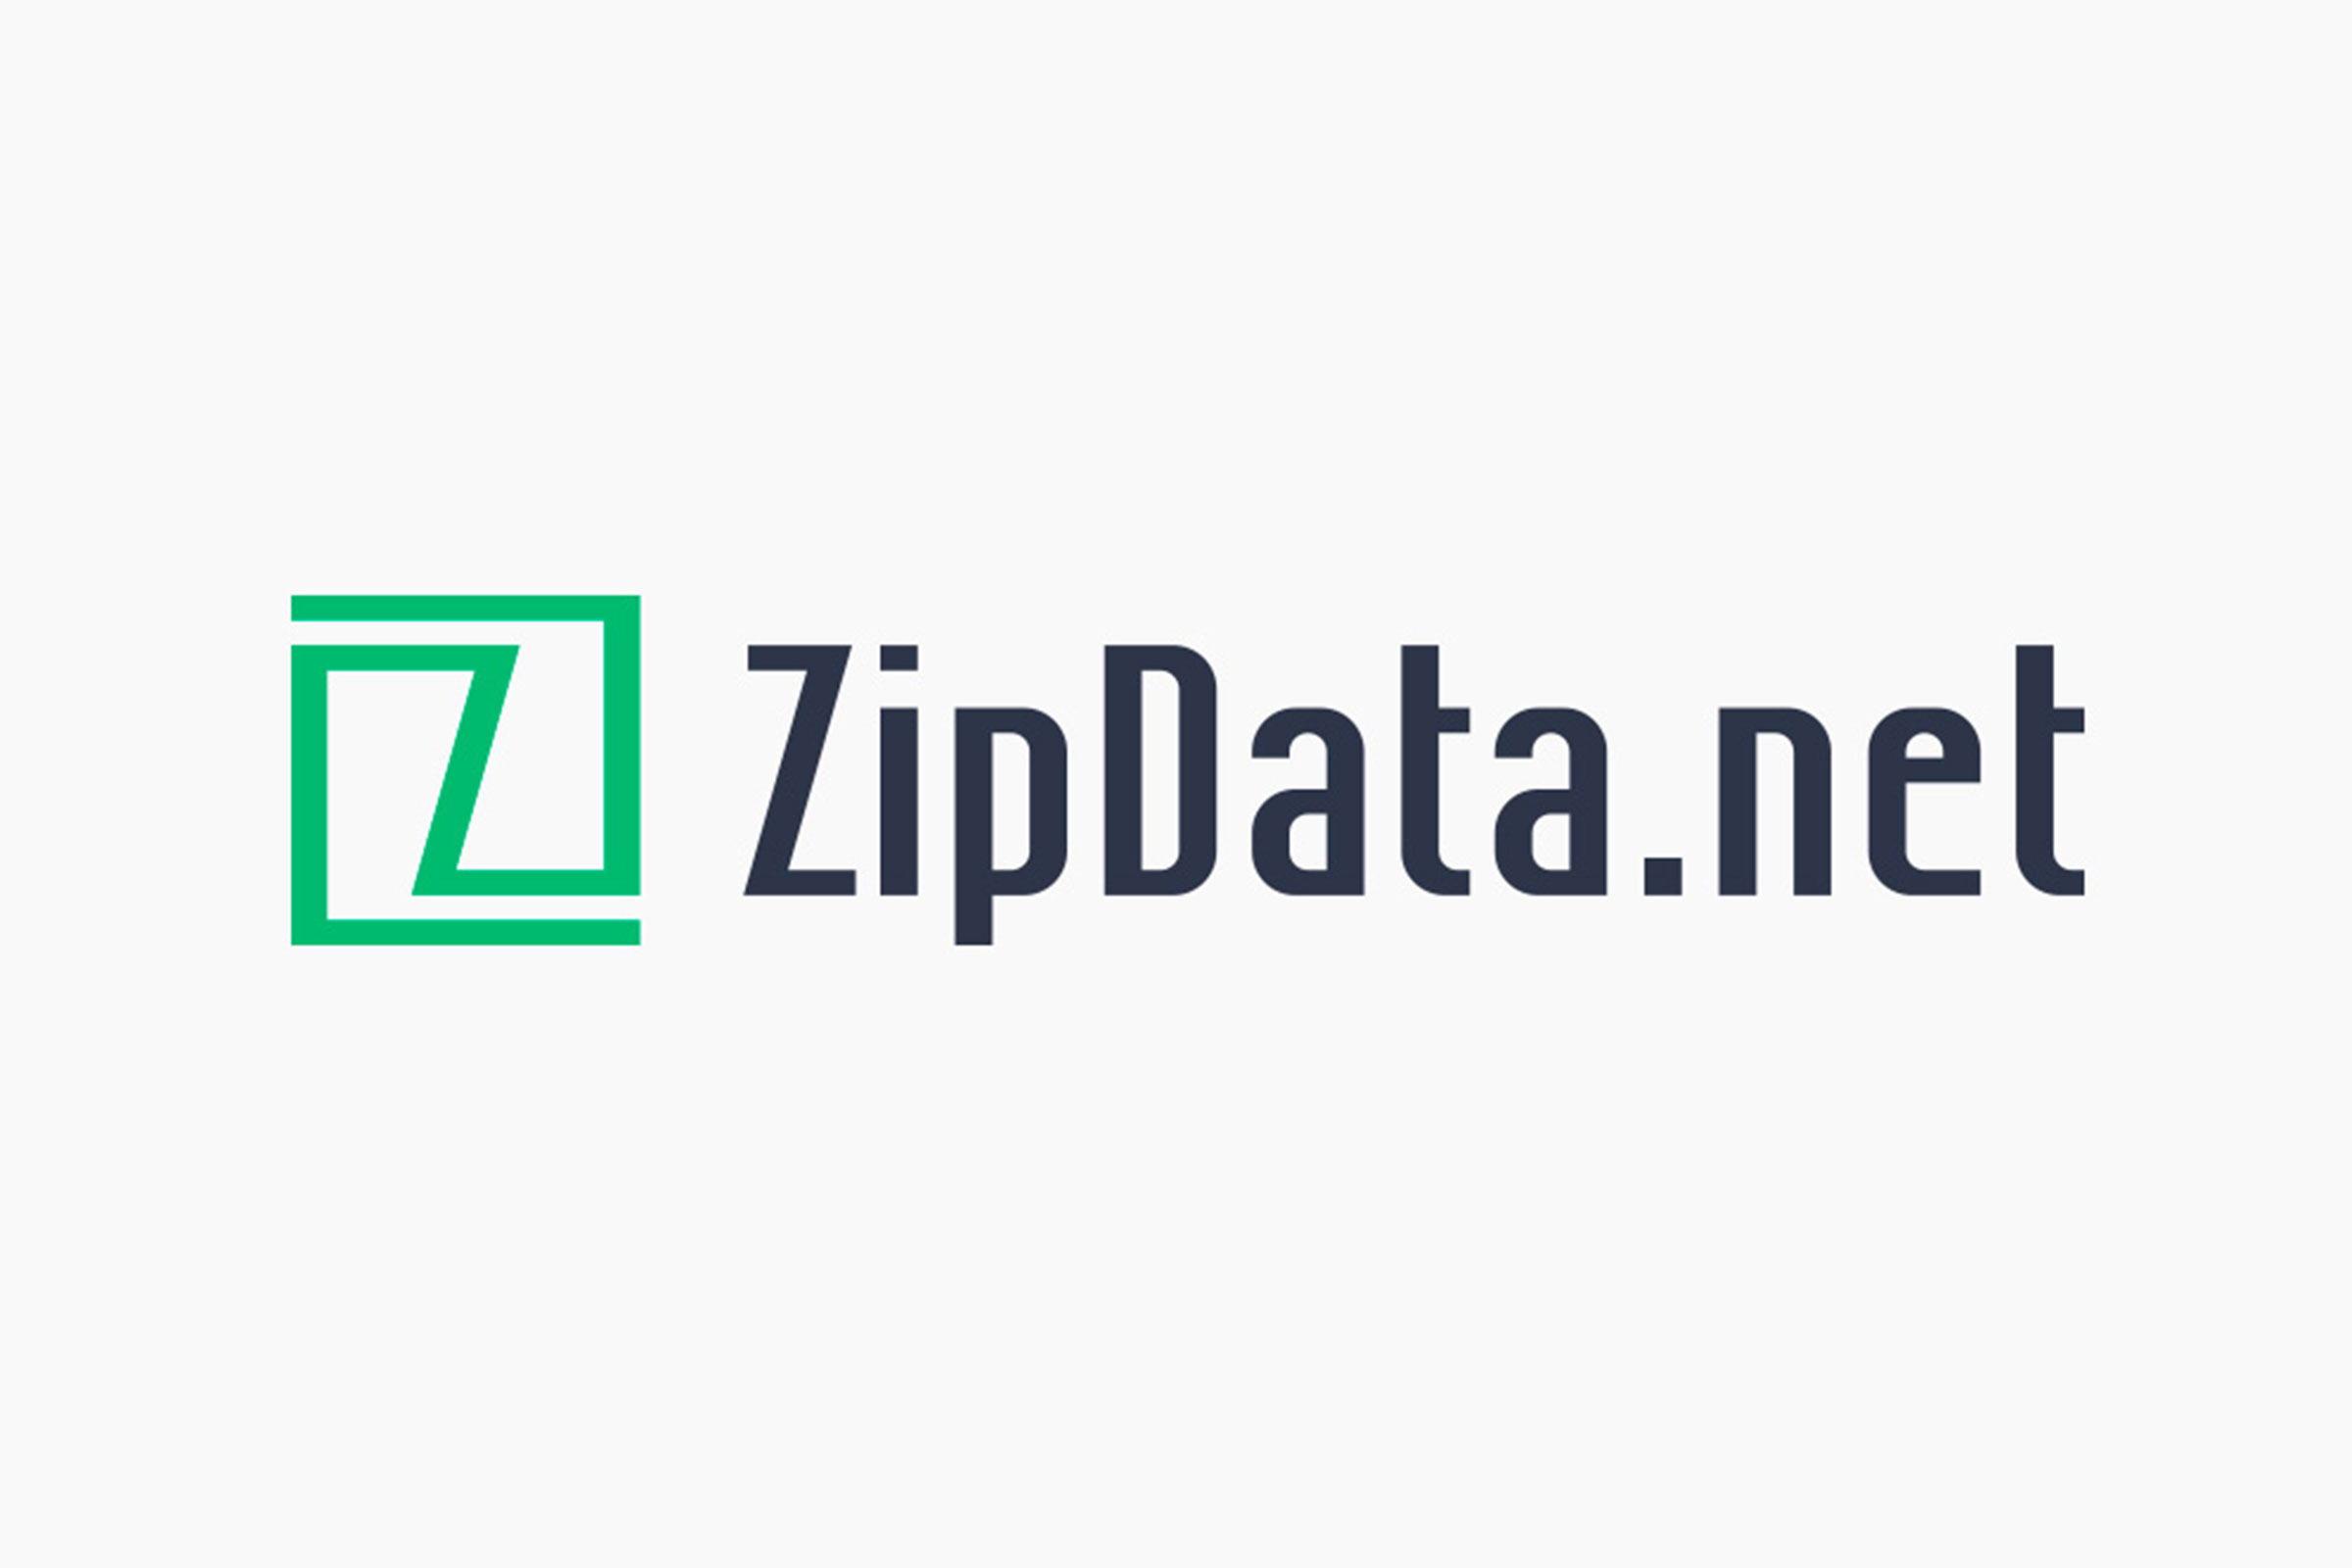 ZipData.net Branding